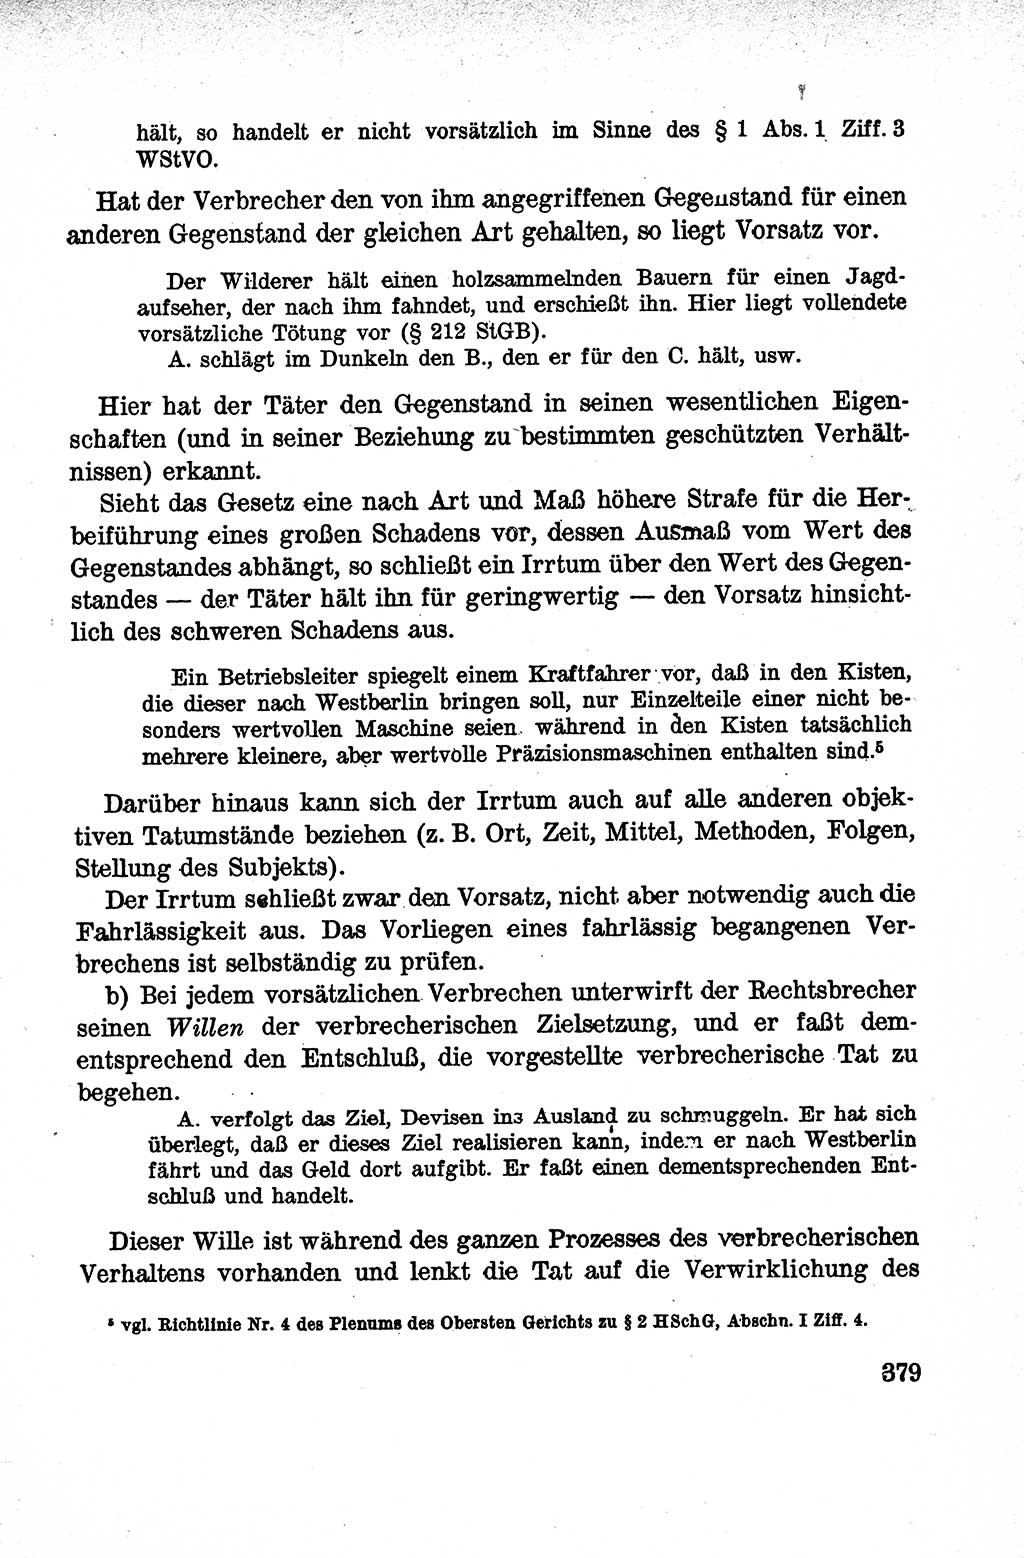 Lehrbuch des Strafrechts der Deutschen Demokratischen Republik (DDR), Allgemeiner Teil 1959, Seite 379 (Lb. Strafr. DDR AT 1959, S. 379)